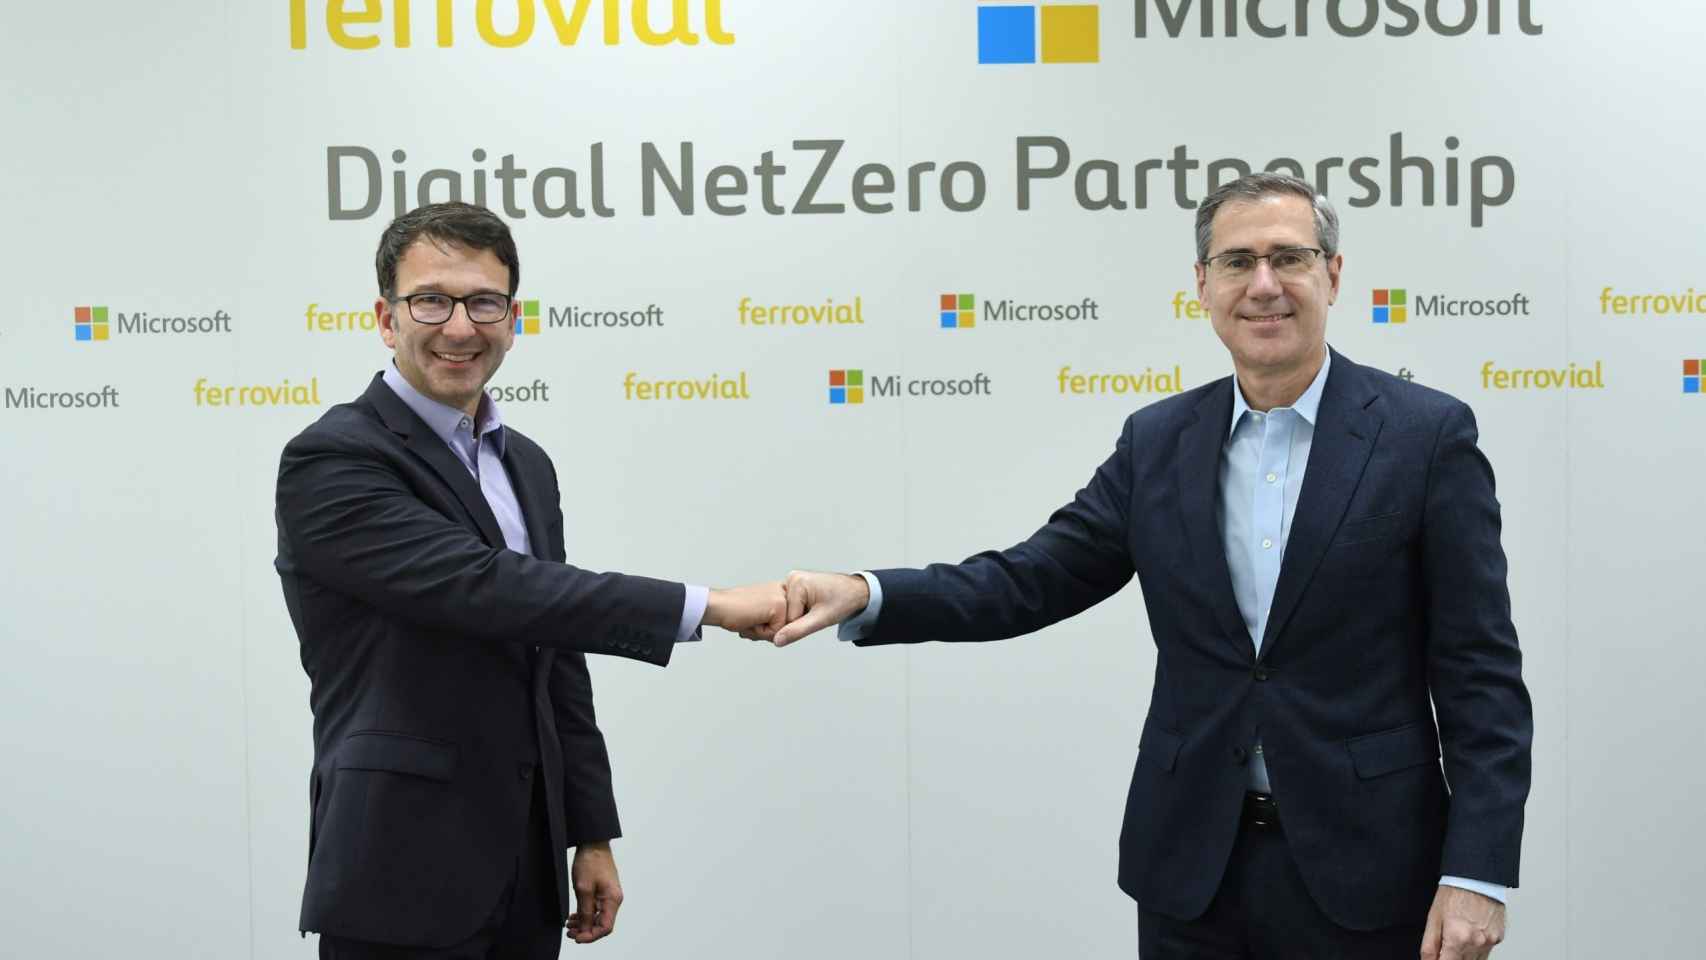 Ignacio Madridejos, consejero delegado de Ferrovial, y Judson Althoff, vicepresidente ejecutivo y director comercial de Microsoft Corporation.